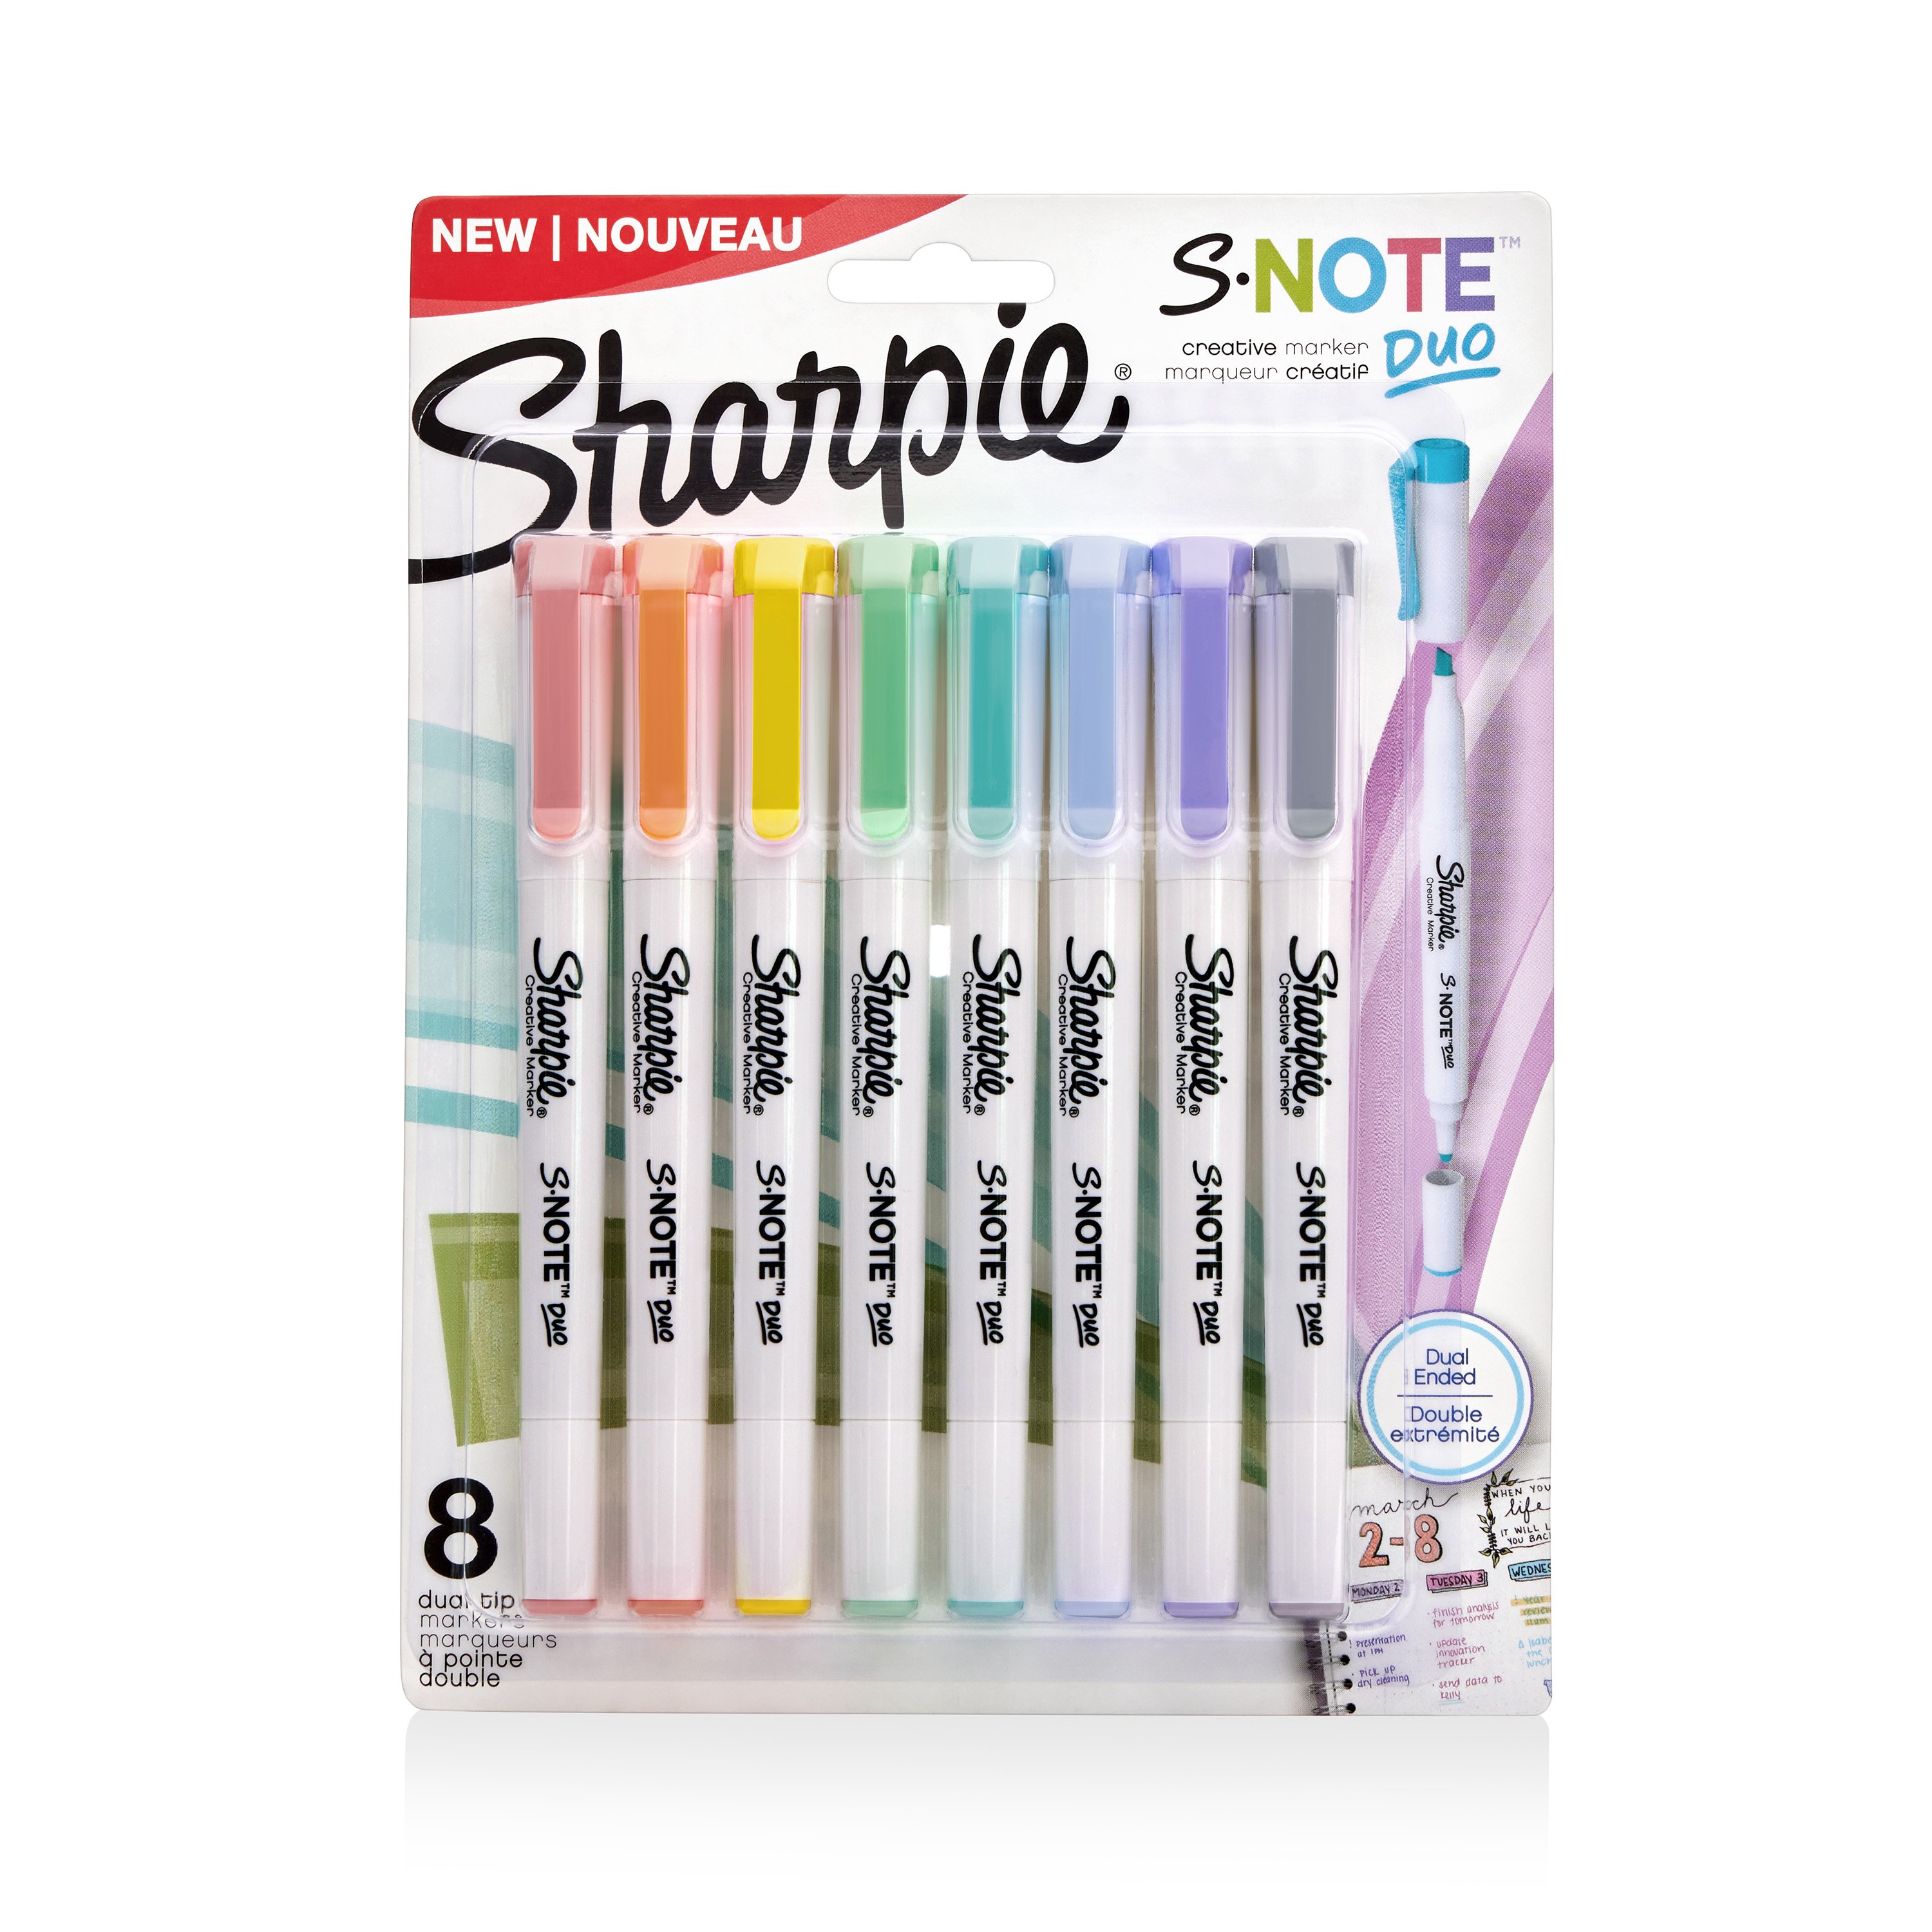 Sharpie 36 S-Note Creative Marker